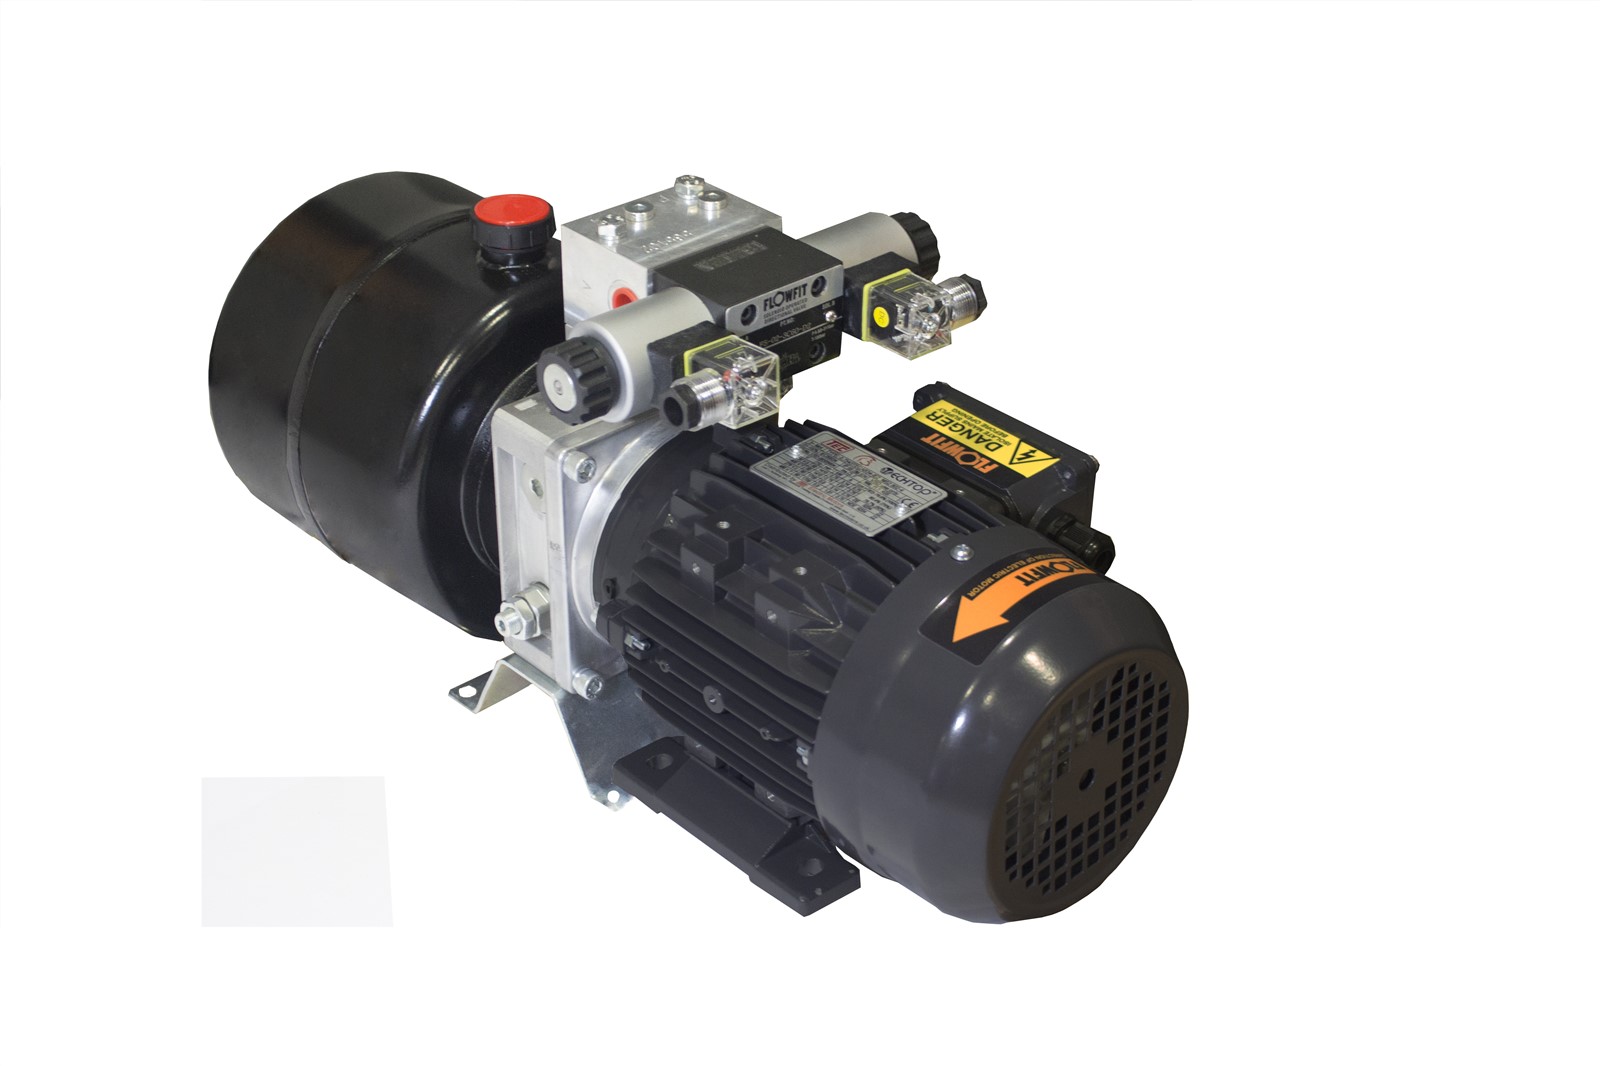 Flowfit Hydraulic AC Power Unit, 415v, Single Phase, Single Acting | eBay